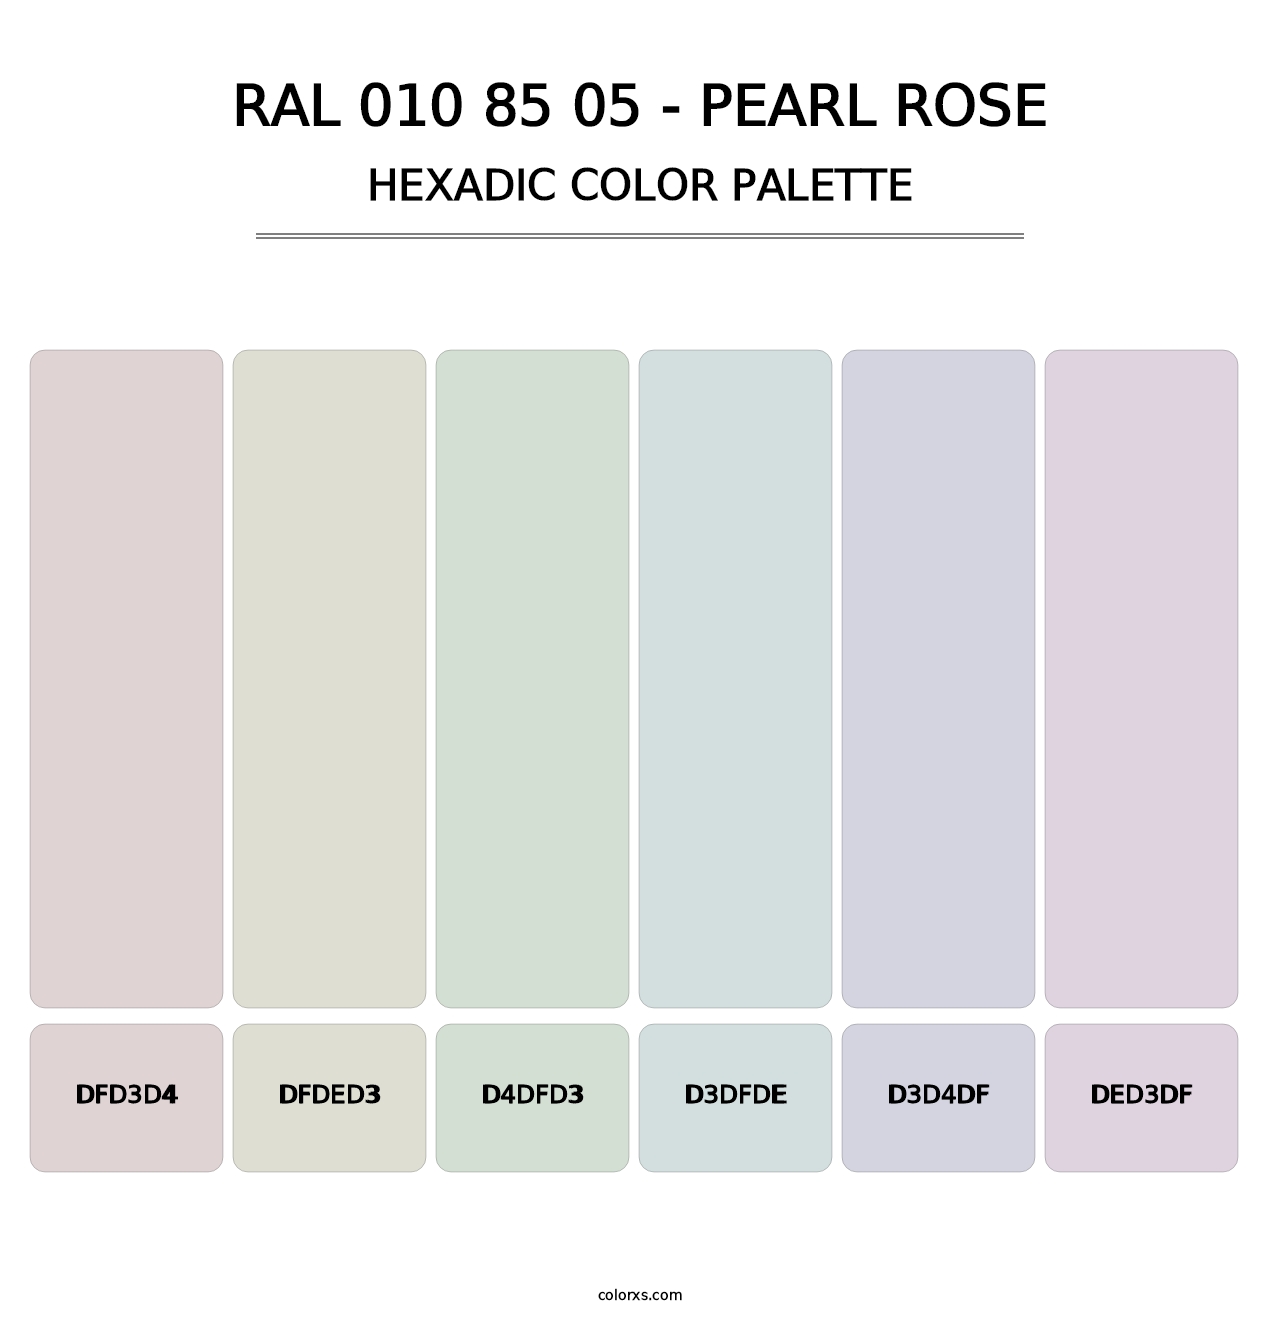 RAL 010 85 05 - Pearl Rose - Hexadic Color Palette